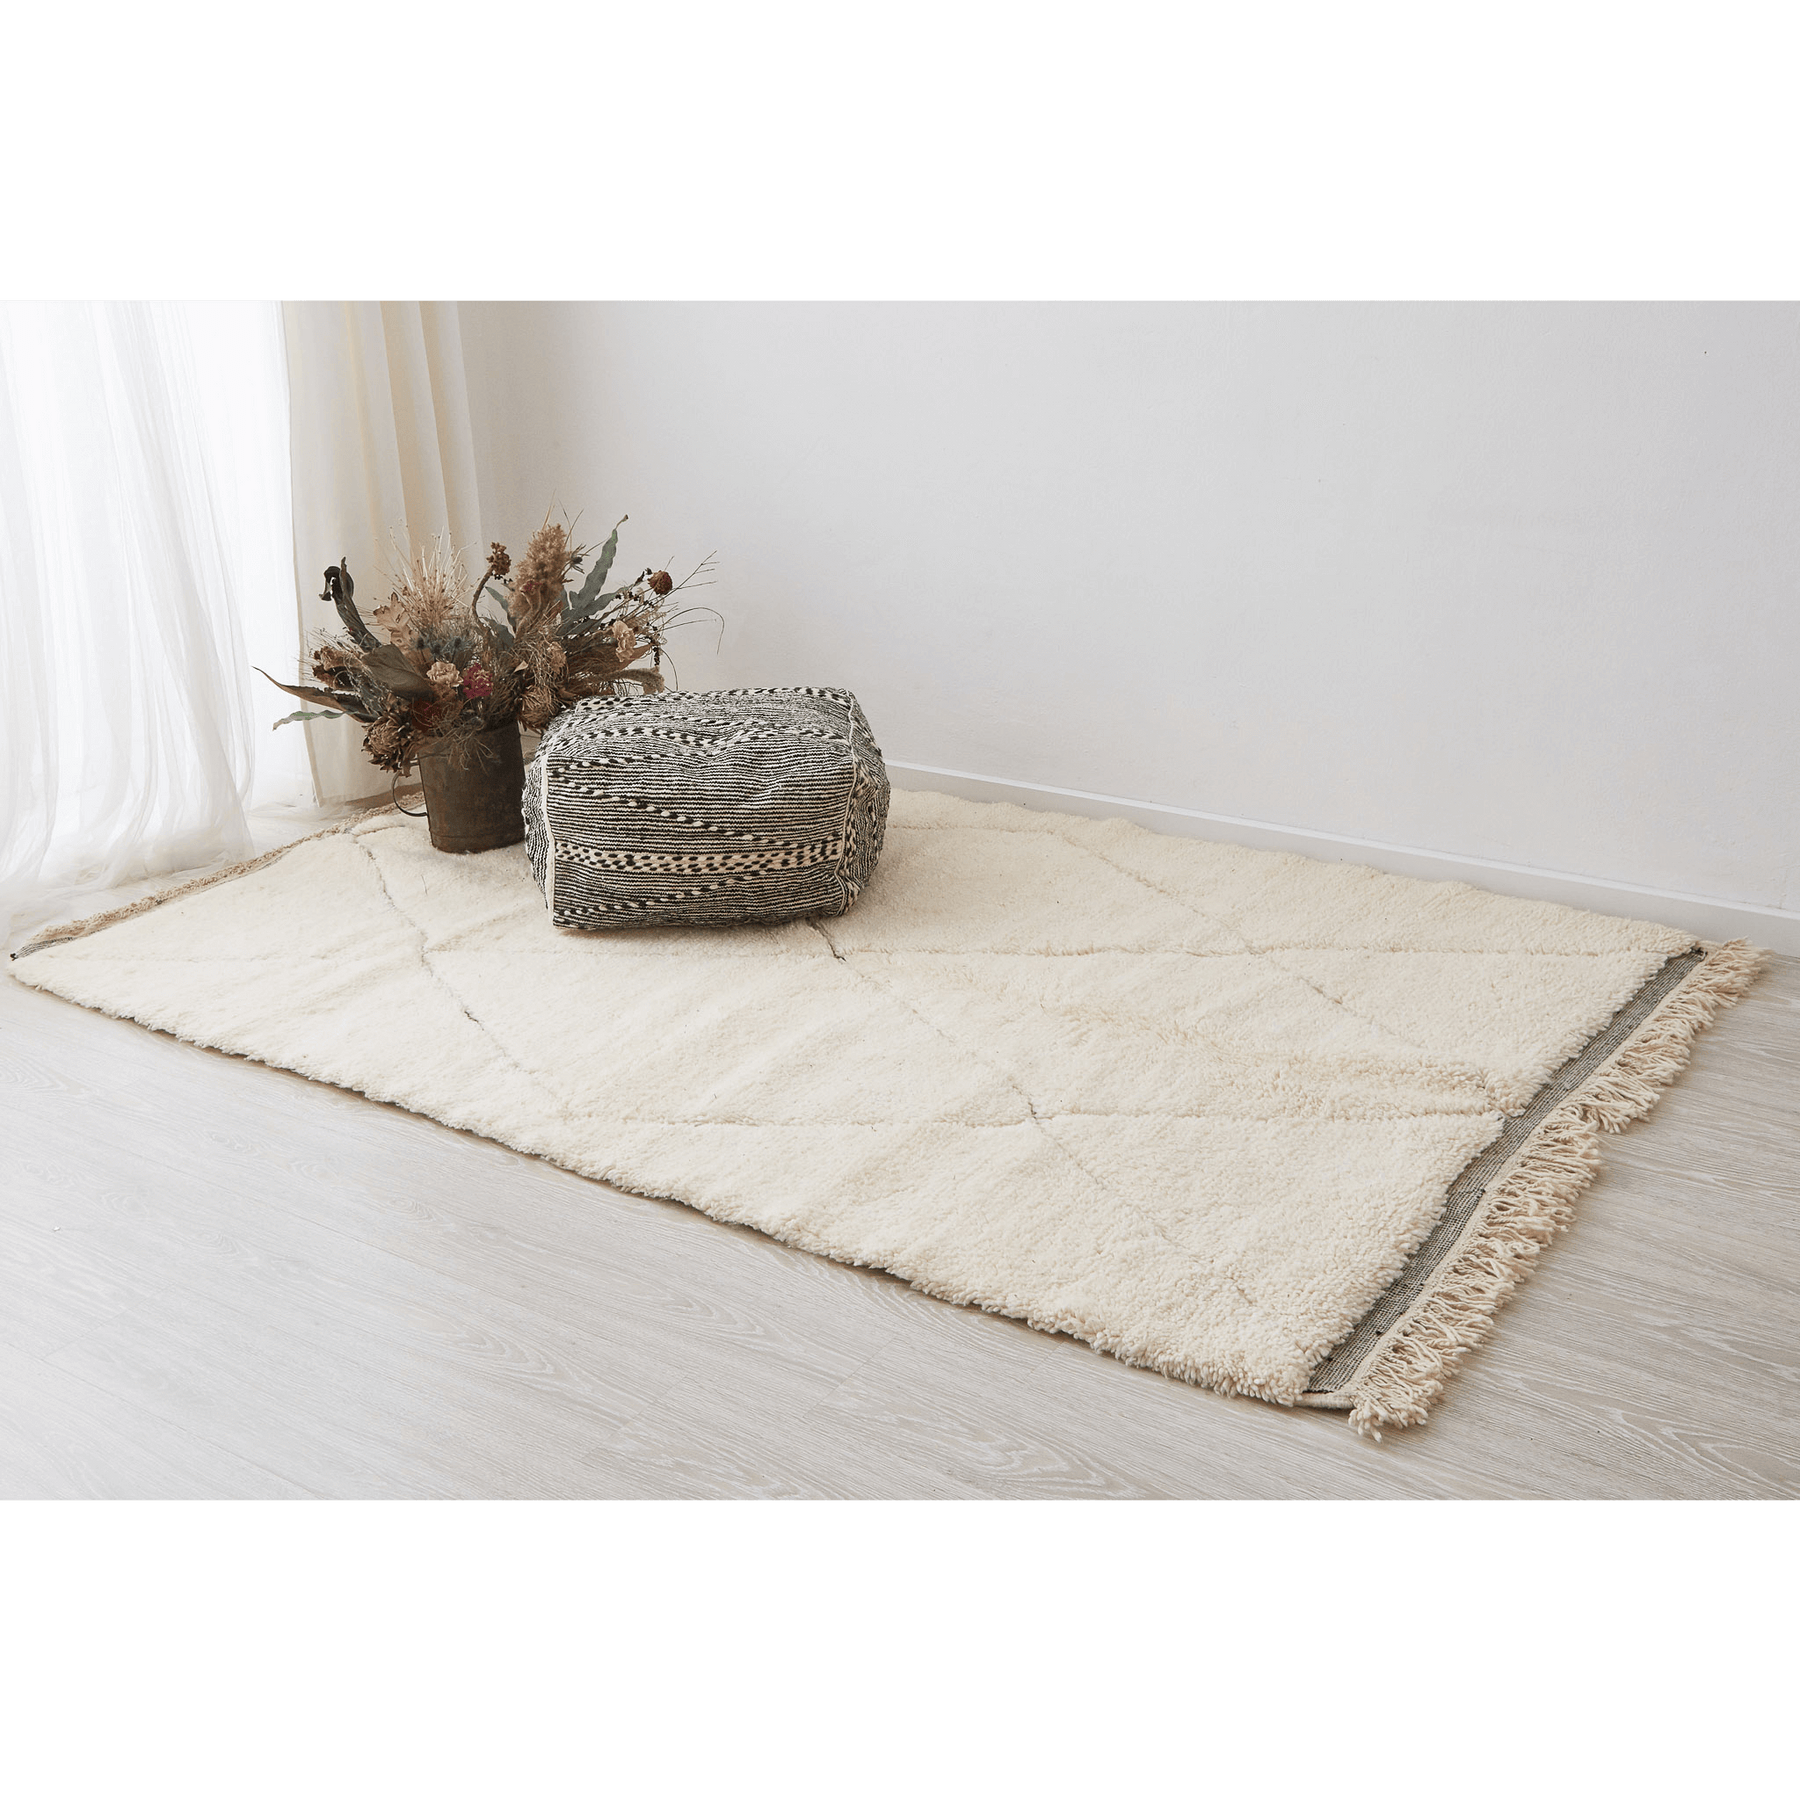 tappeto beni ourain con morbido pelo lungo a tinta unita e disegni geometrici con leggera rasatura disteso sul pavimento